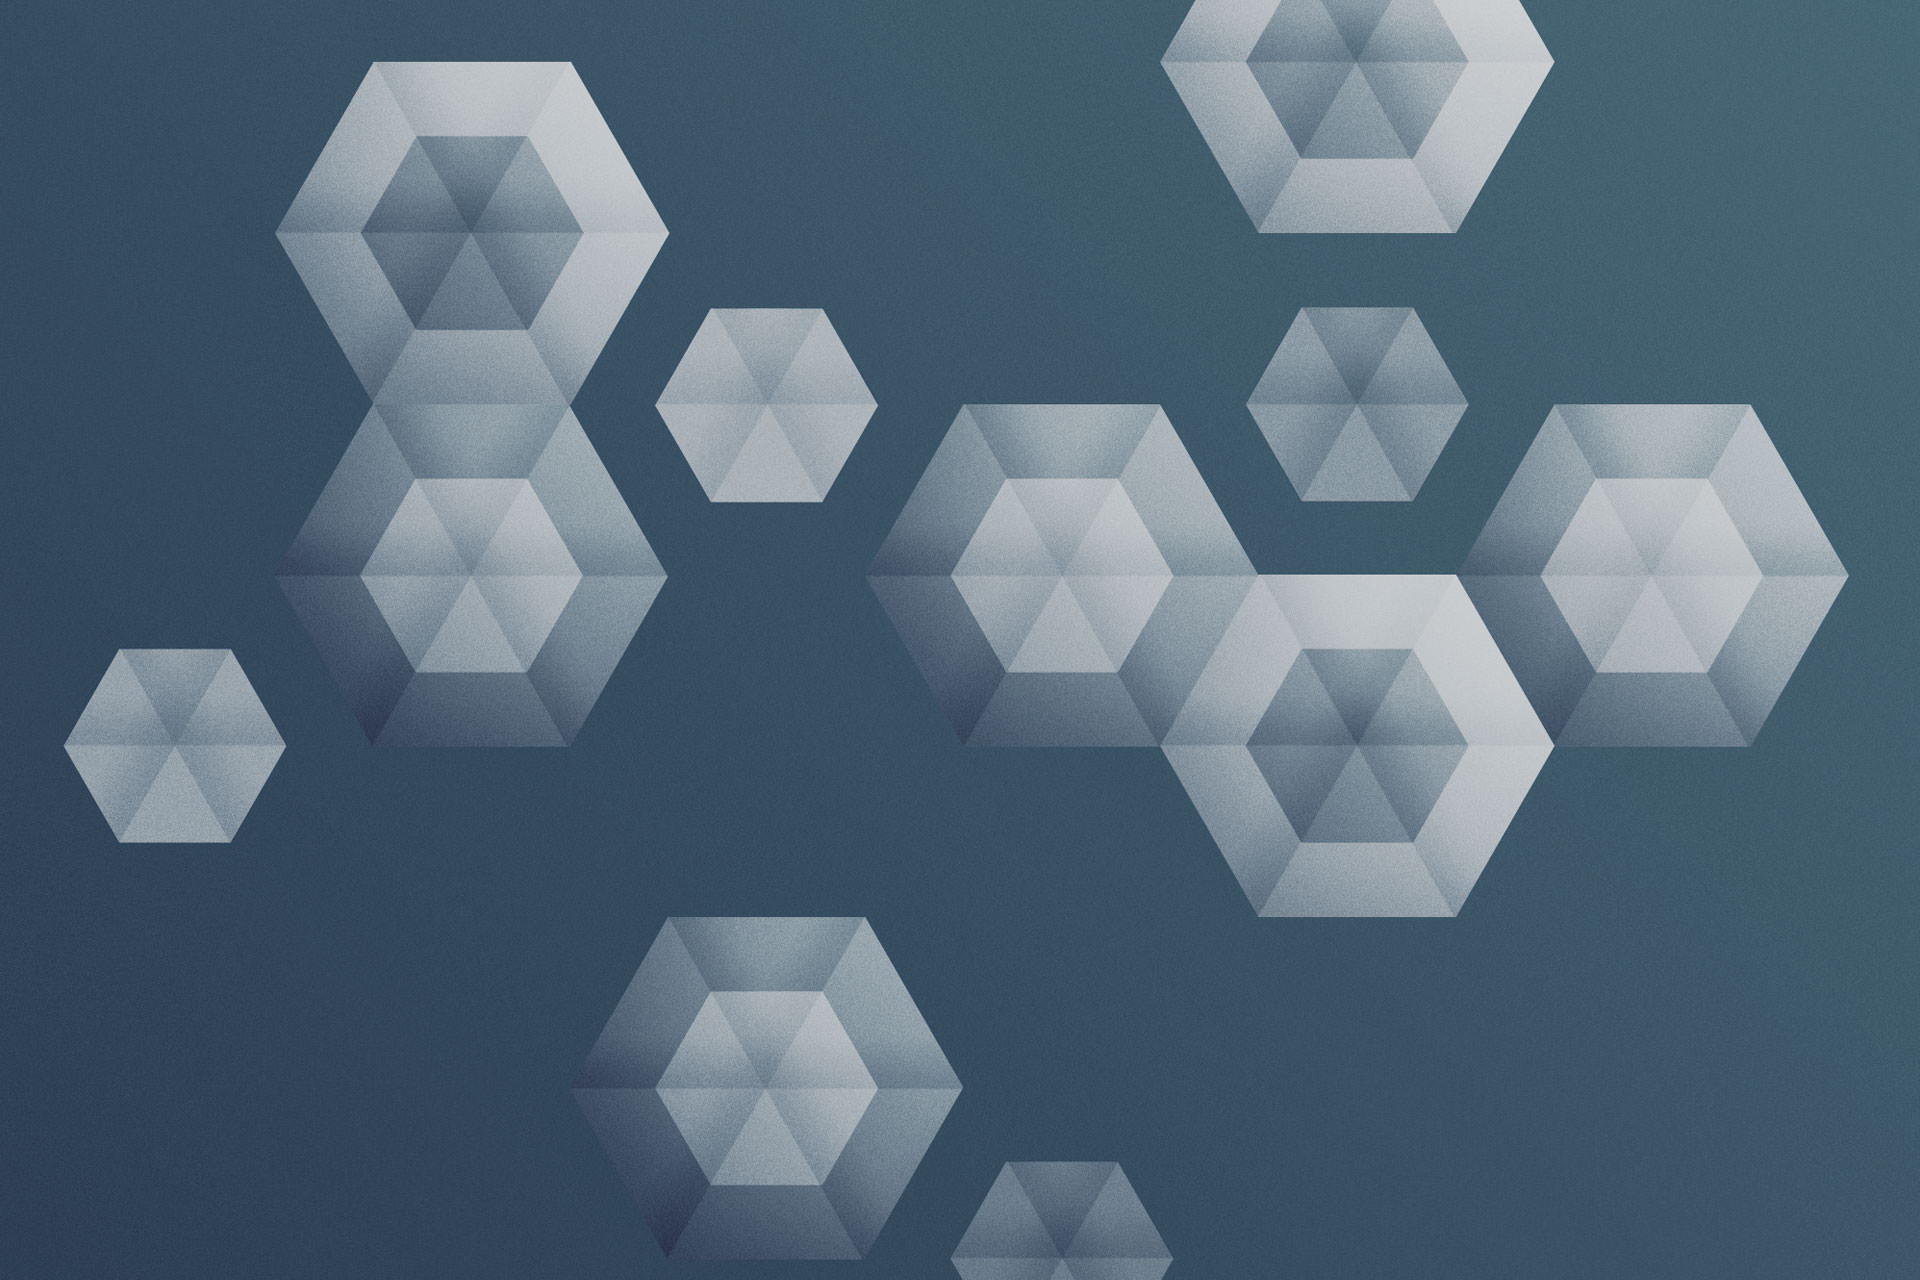 Cyanogenmod Wallpapers